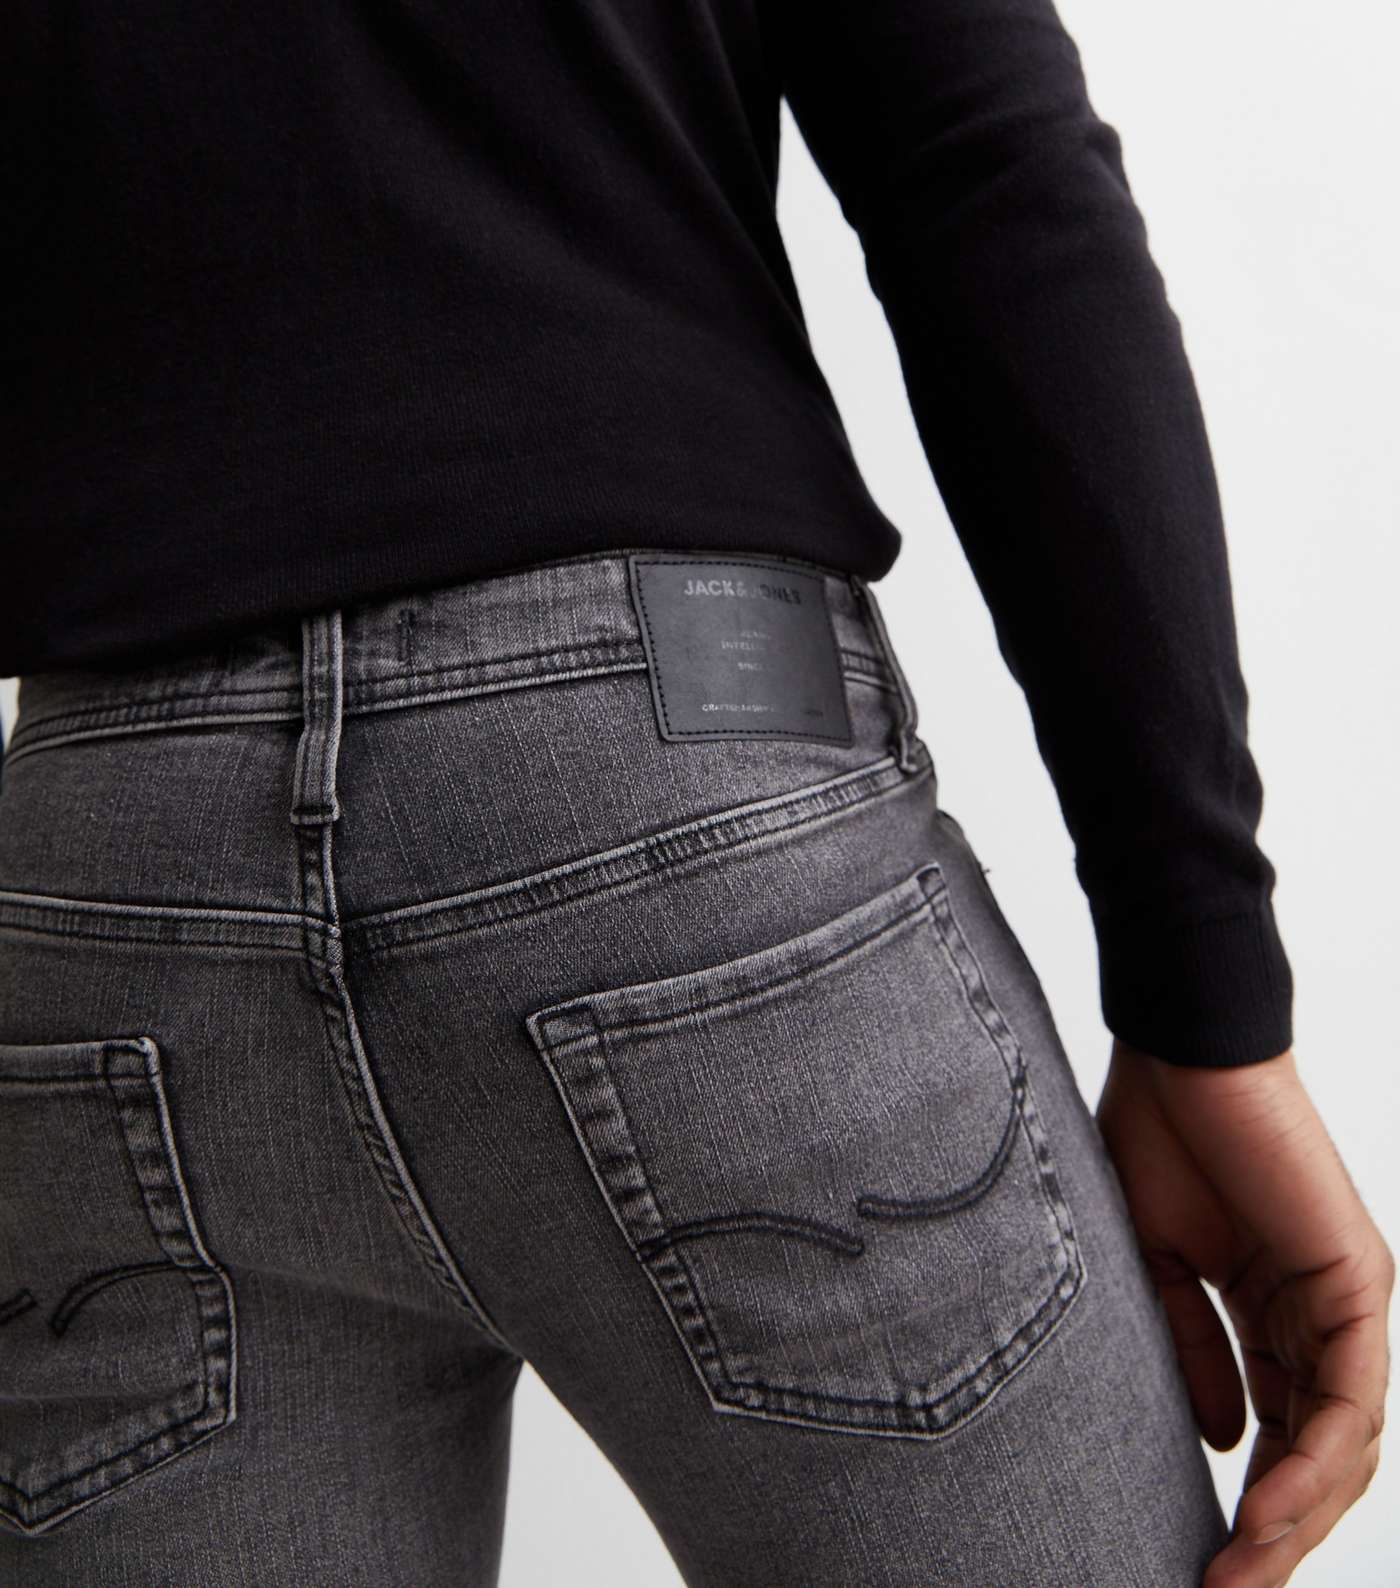 Jack & Jones Black Mid Rise Slim Fit Jeans Image 2